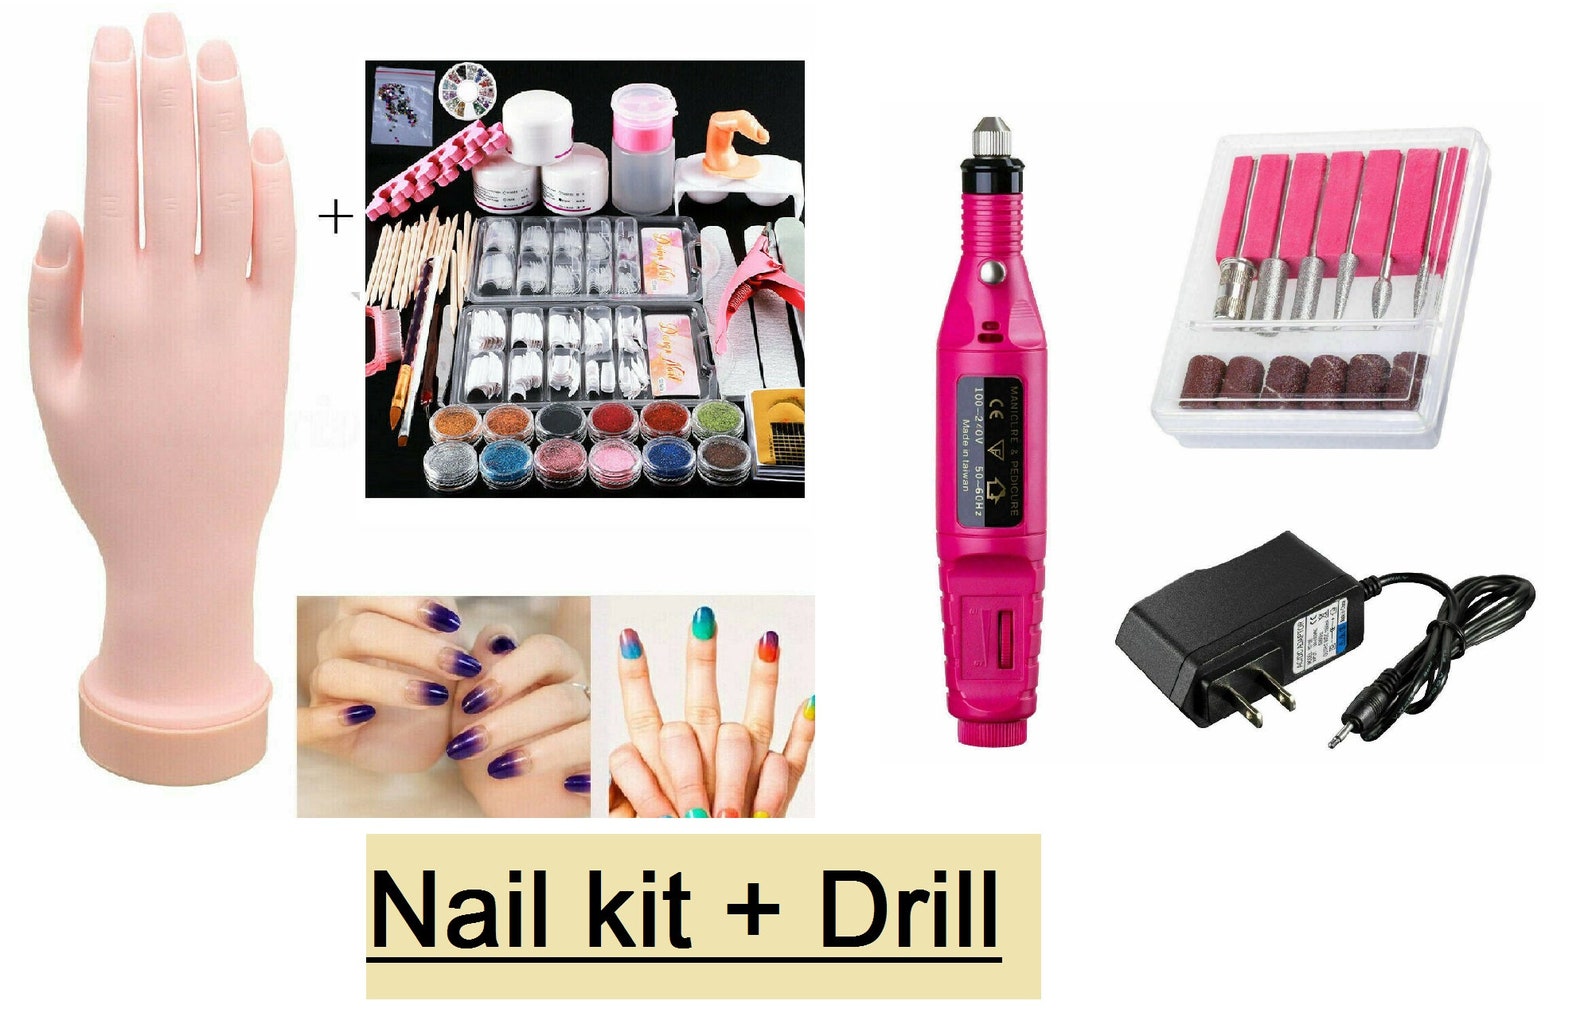 Nail Art Kit at Target - wide 10